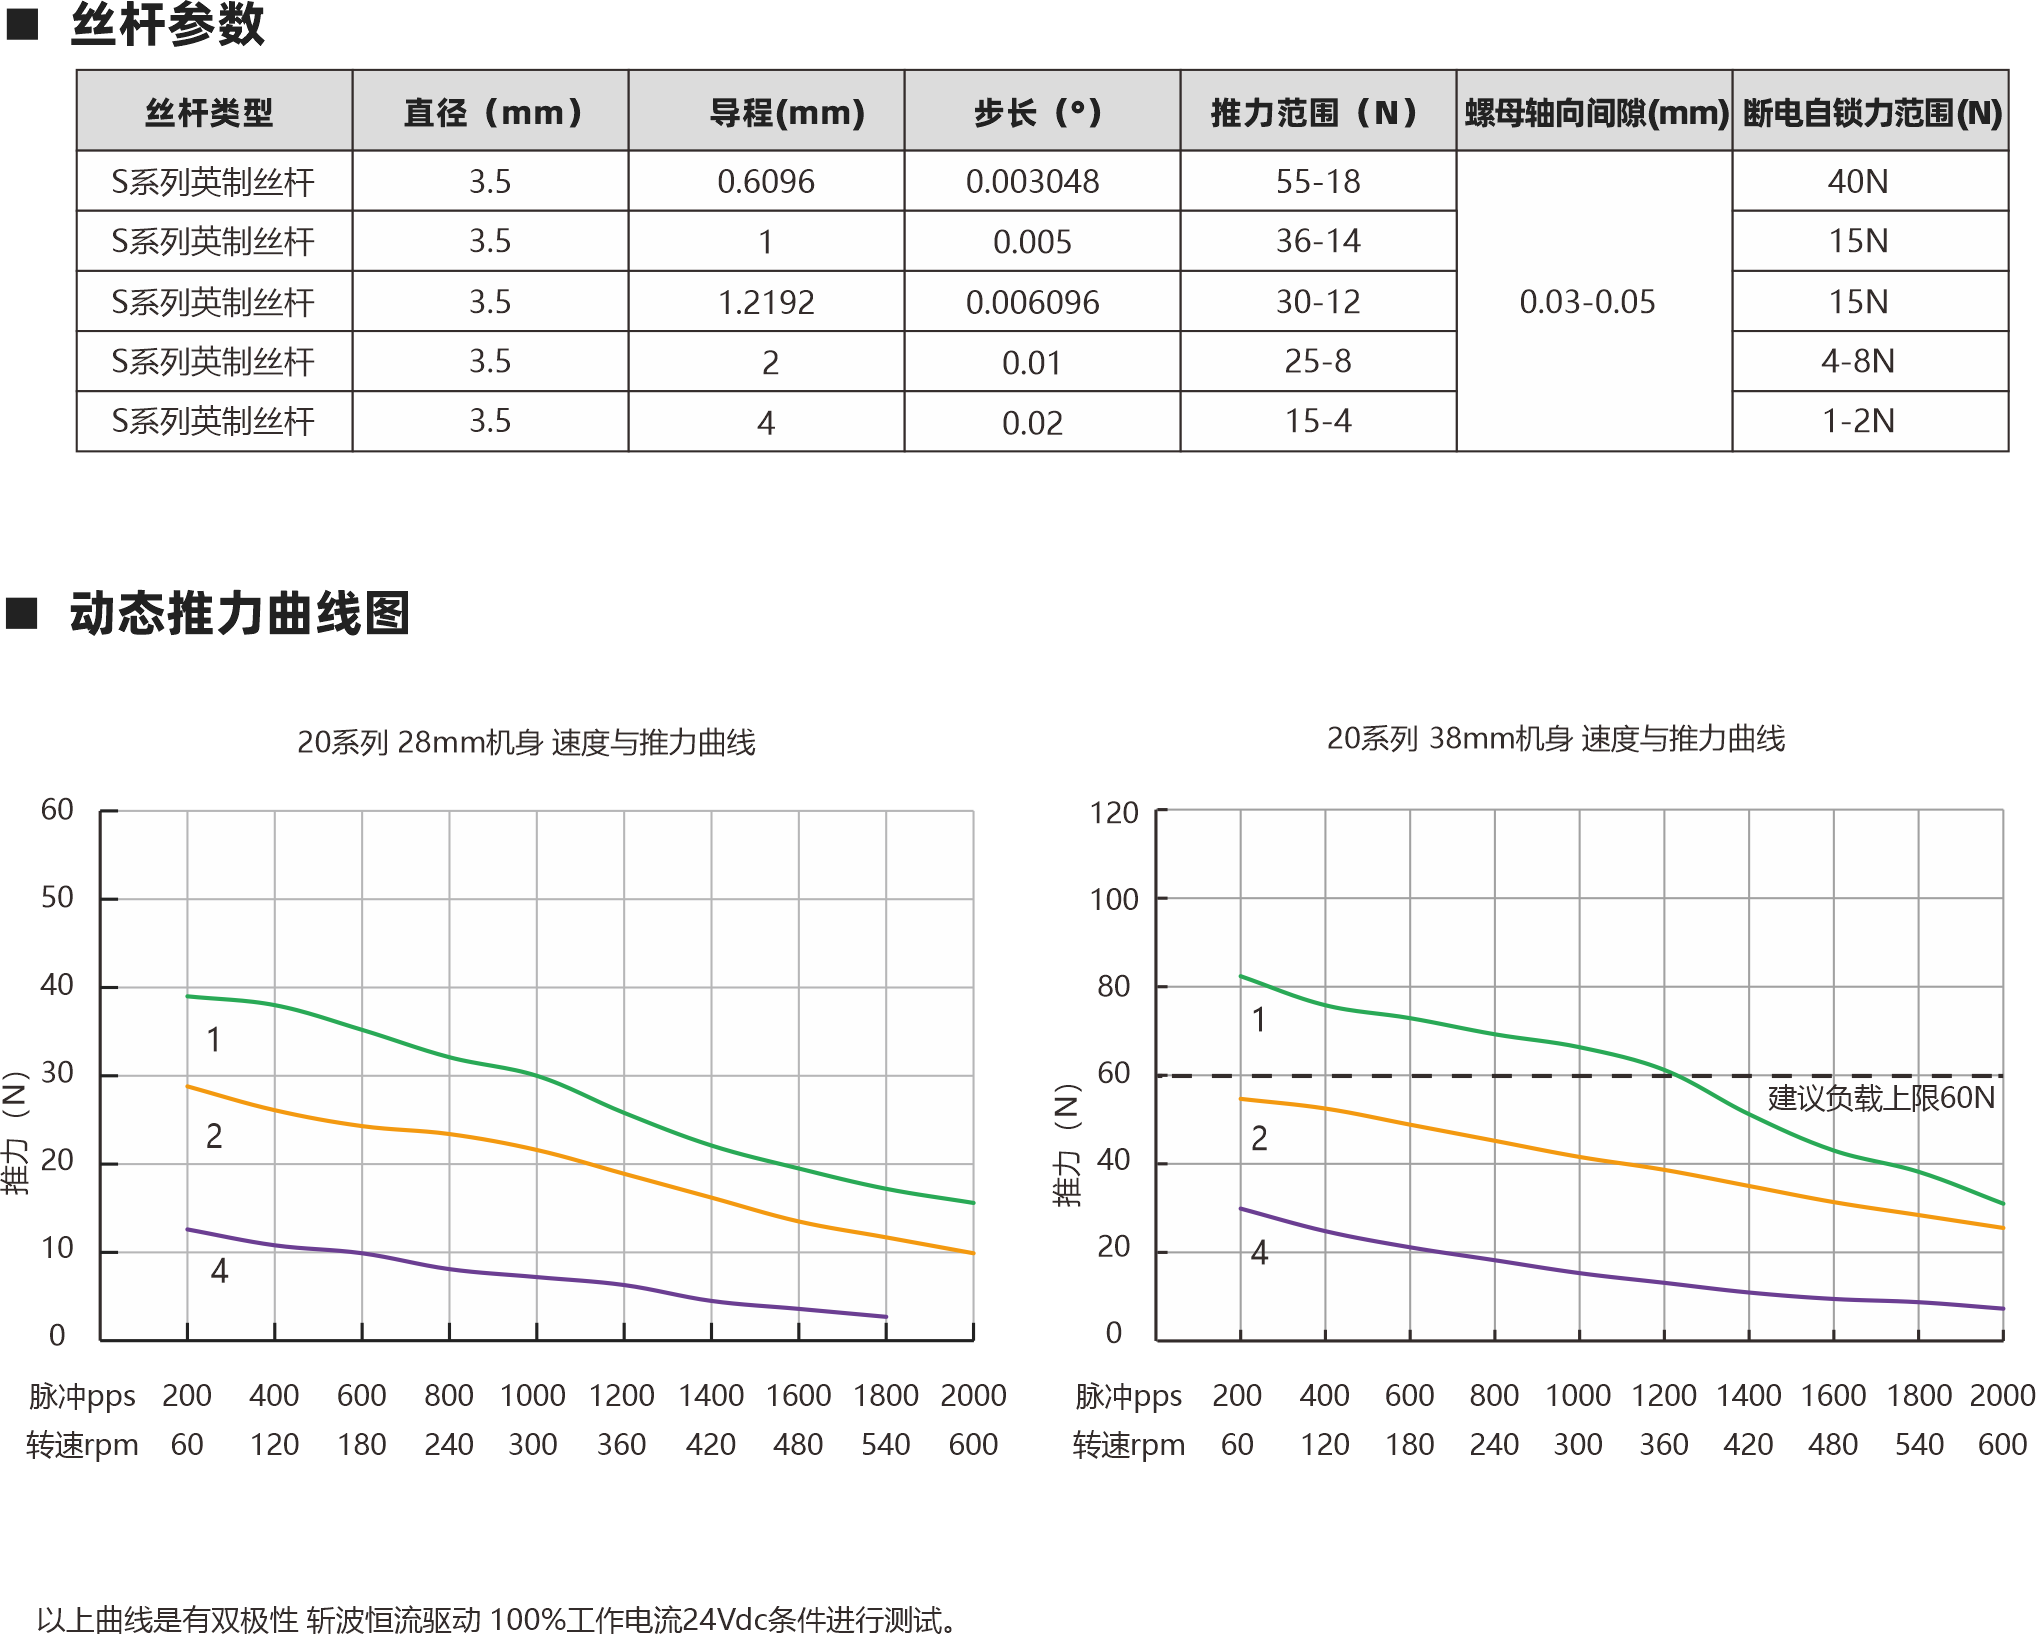 相数 步距角精度 IP等级  认证 绝缘等级 运行环境温度 2 ±5％ 40 RoHS CE ISO9001 B（130℃） -20℃～ +50℃ 螺母类型 电机参数 动态推力曲线图 20 28mm 38mm 0.015 0.03 0.5A 0.5A 4.9Ω 11Ω 1.5mH 2mH 2.45V 5.5V 电机类型 机身L（mm） 保持力矩（N.m） 额定电流（A） 电阻(Ω) 额定电感(mH) 额定电压(V) 丝杆参数 S系列英制丝杆 S系列英制丝杆 3.5 3.5 55-18 36-14 0.03-0.05 40N 15N S系列英制丝杆 S系列英制丝杆 3.5 3.5 30-12 25-8 15N 4-8N S系列英制丝杆 3.5 0.6096 1 1.2192  2 4 0.003048 0.005 0.006096 0.01 0.02 15-4 1-2N 丝杆类型 直径（mm） 导程(mm) 步长（°） 推力范围（N） 螺母轴向间隙(mm) 断电自锁力范围(N) Lx L 1.5 4-AWG#26引出线 20 15.4 4-AWG#26引出线 M2X0.4 4 Lx L 1.5 三角形螺母 圆形螺母 20系列 28mm机身 速度与推力曲线 以上曲线是有双极性 斩波恒流驱动 100%工作电流24Vdc条件进行测试。 20系列 38mm机身 速度与推力曲线 脉冲pps 转速rpm 200 60 400 120 600 180 800 240 1000 300 1200 360 1400 420 1600 480 1800 540 2000 600 脉冲pps 转速rpm 200 60 400 120 600 180 800 240 1000 300 1200 360 1400 420 1600 480 1800 540 2000 600 60 50 40 30 20 10 0 120 100 80 60 40 20 0 消隙螺母 外部驱动式电机 贯通轴式电机 建议负载上限60N 10 3.5 9 3.50 1 2 4 1 2 4 建议负载上限60N 步进直线传动产品制造商 Linear stepper motor provider 步进直线传动产品制造商 Linear stepper motor provider 20 15.80 3 3- 2.70 3- 3 3